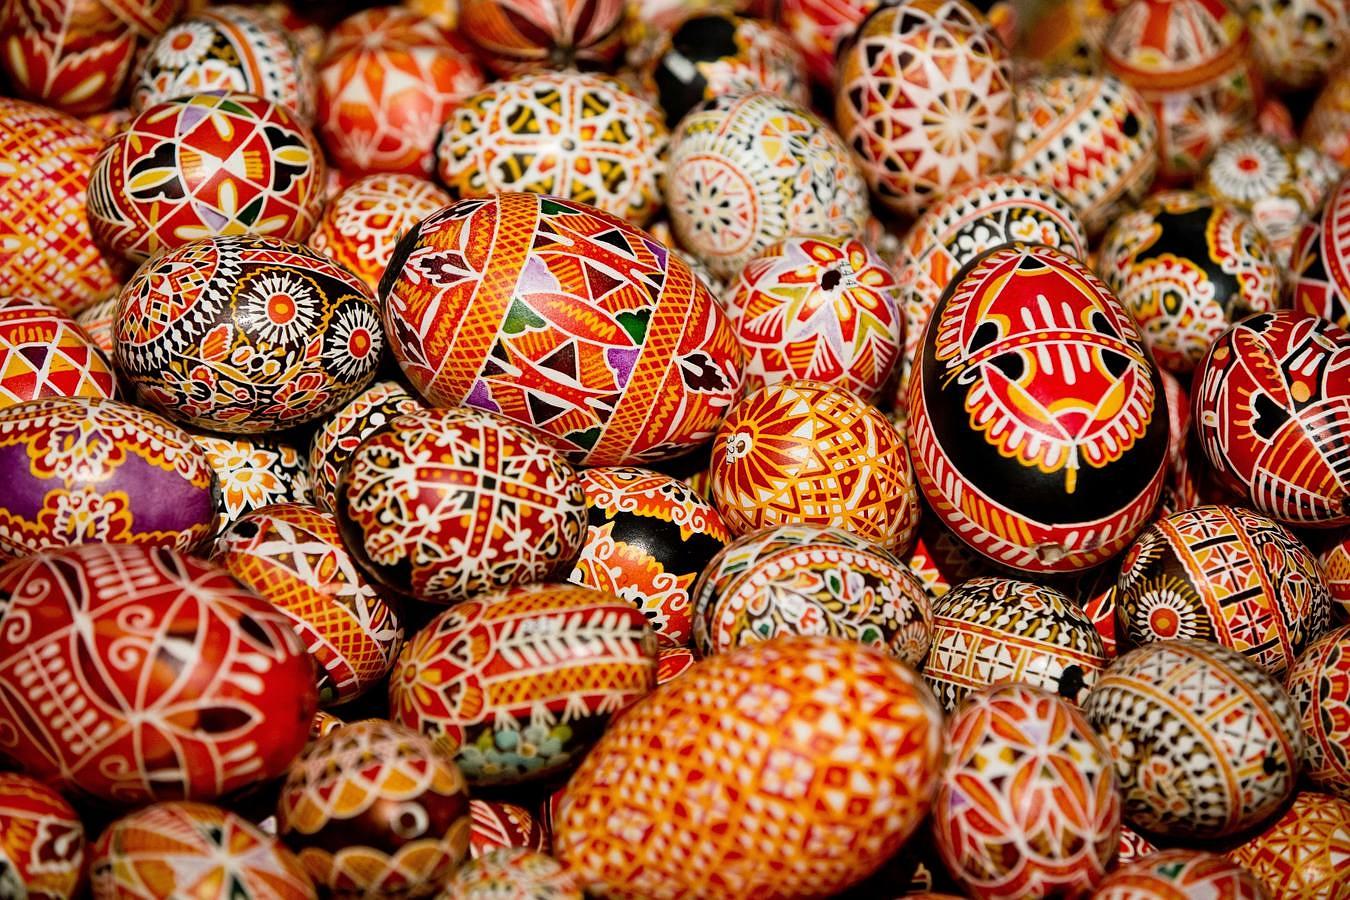 Huevos checos decorados expuestos en Alemania